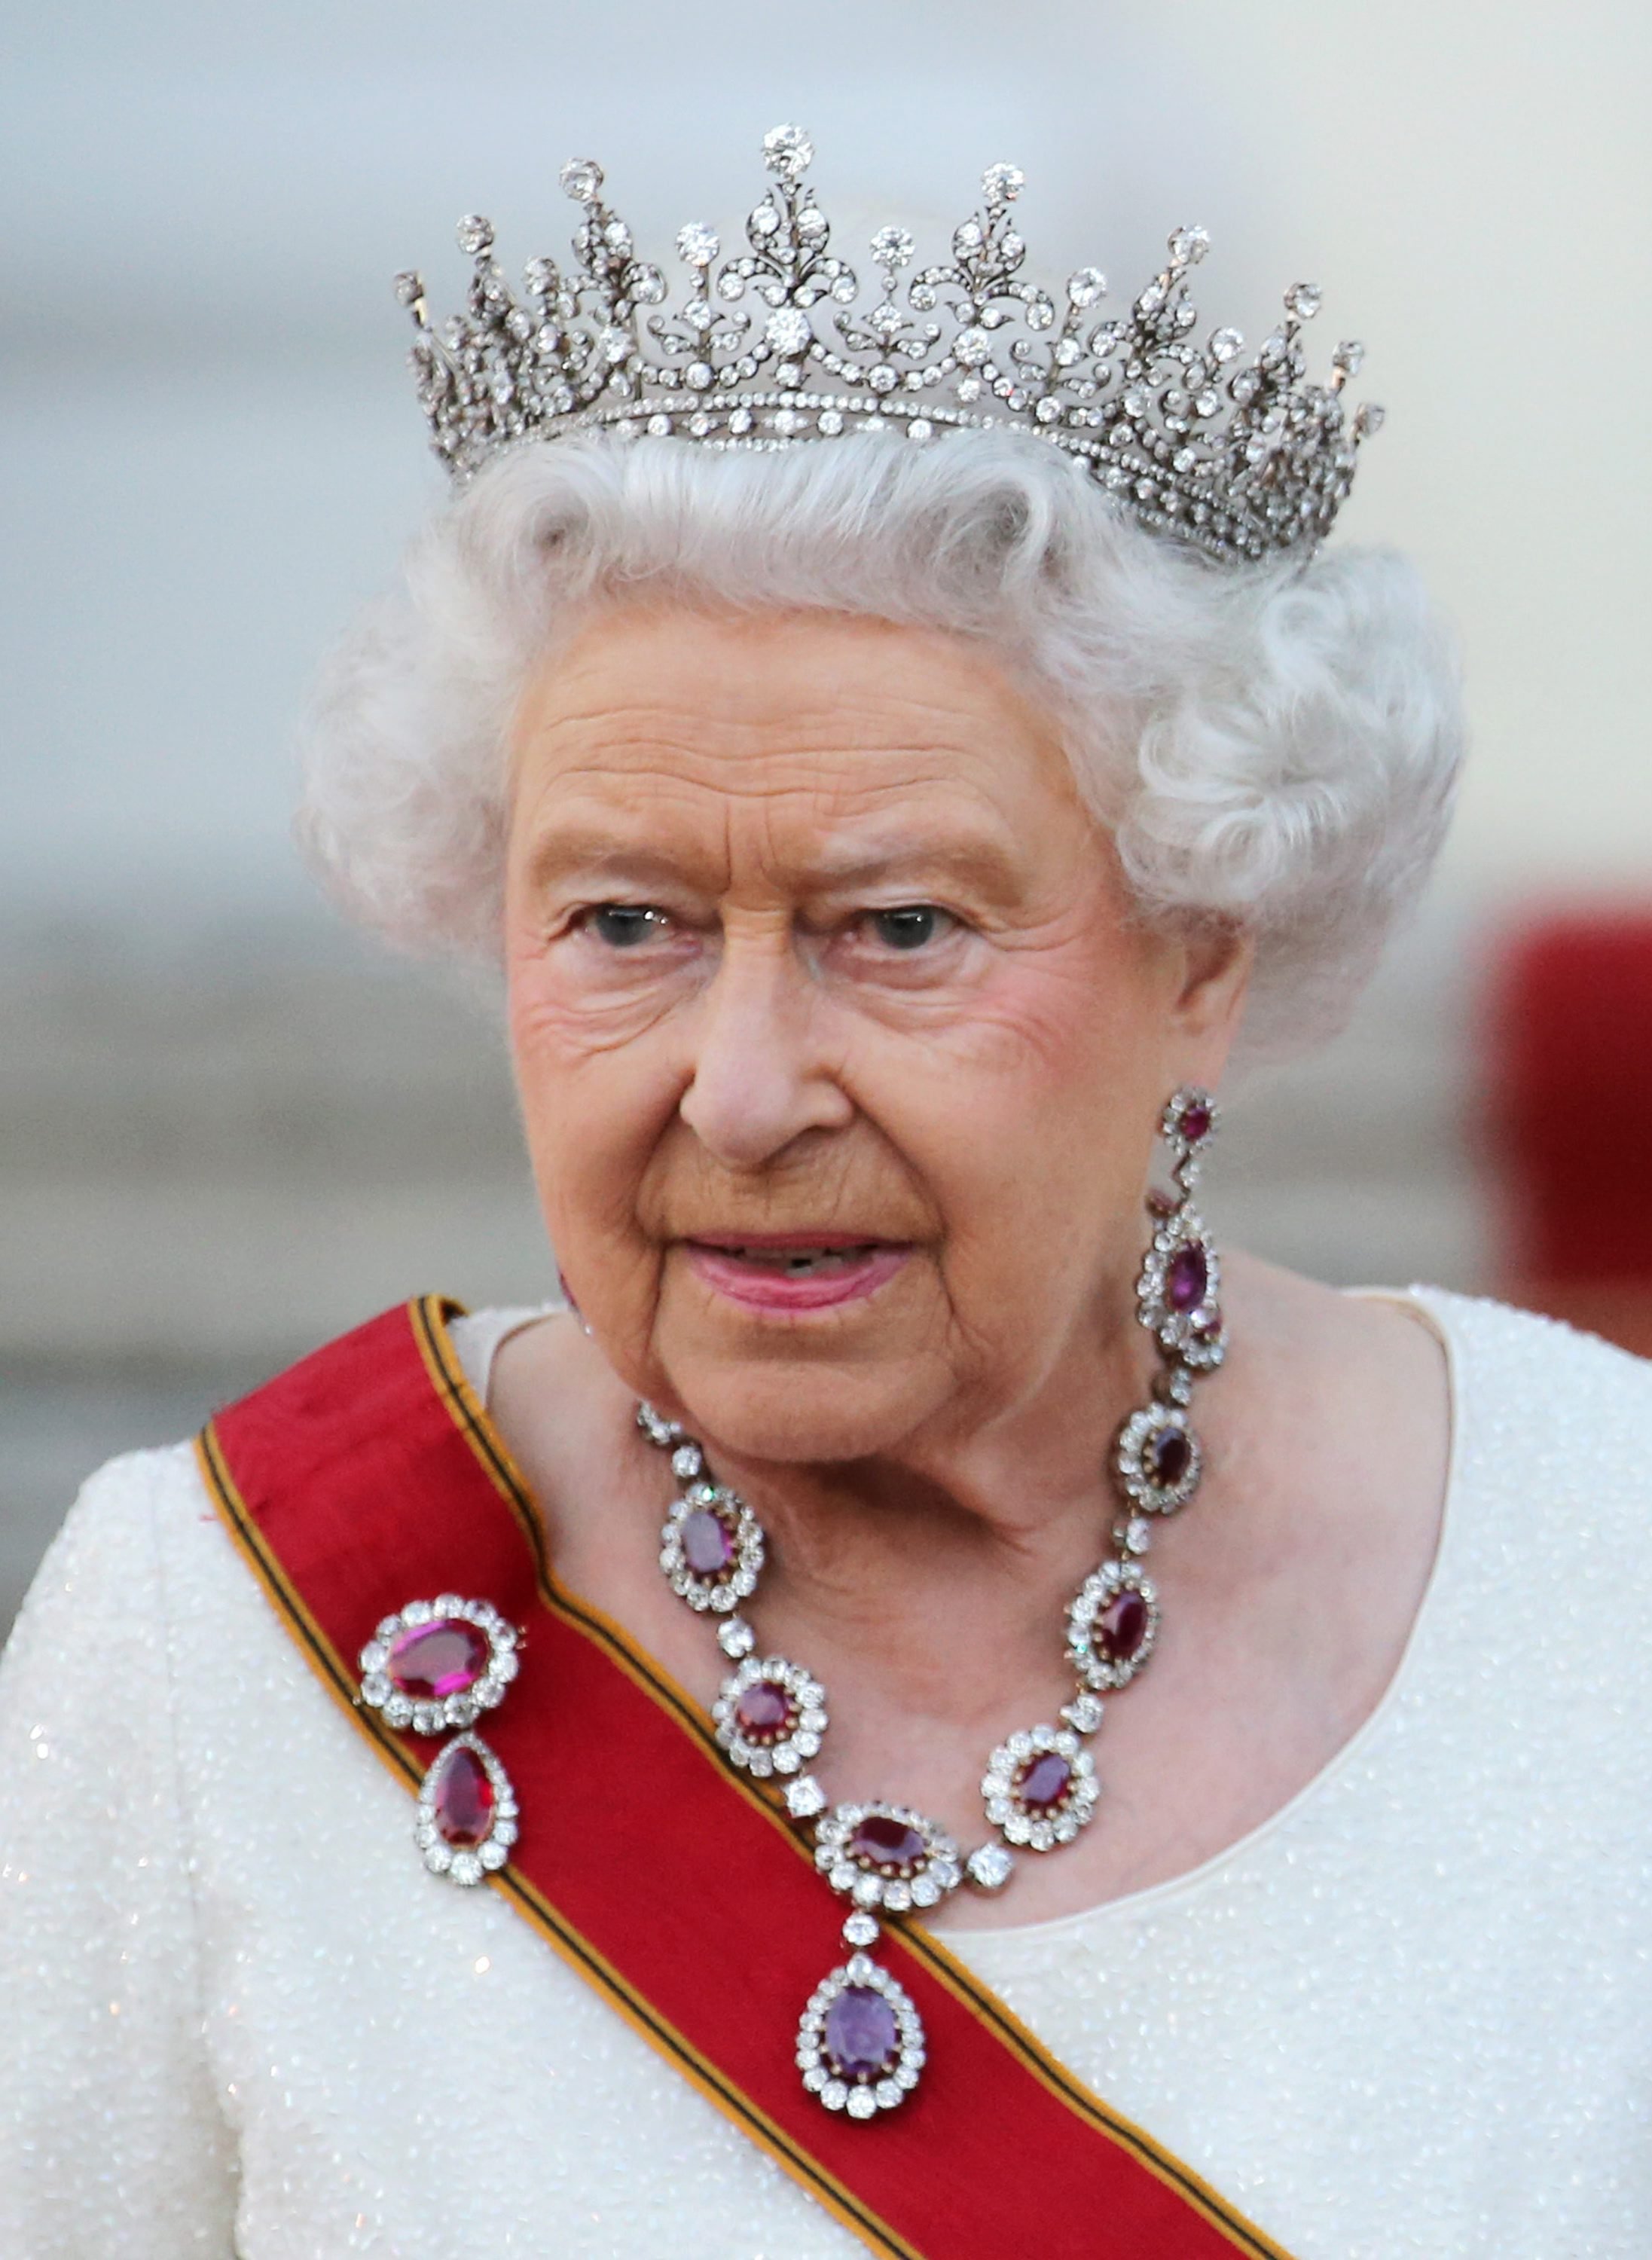 Королева картинки. Елизавета вторая Королева Англии. Елизавета 2 Королева Великобритании фото. Королева Англии Элизабета. Королева Лондона Елизавета 2 в молодости.